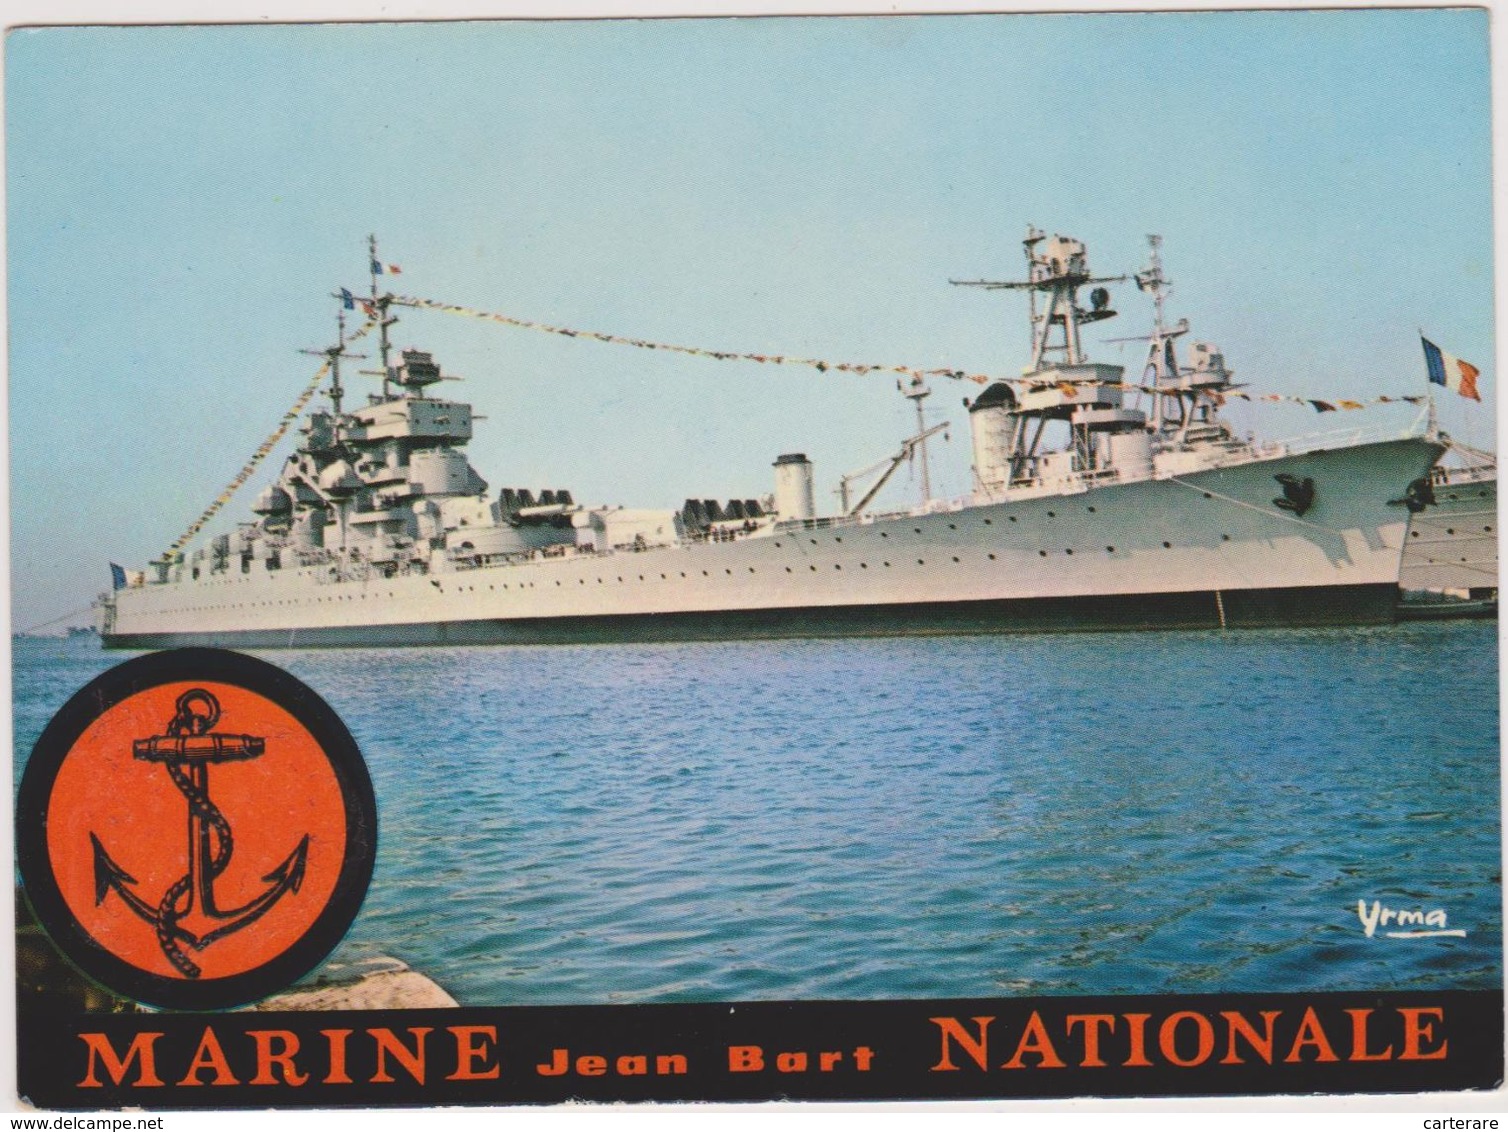 MARINE NATIONALE Française,cuirassé,jean Bart,antiaérienne,rare Avec Chapeau De Marin Ajouté,ajouti,rare - Warships